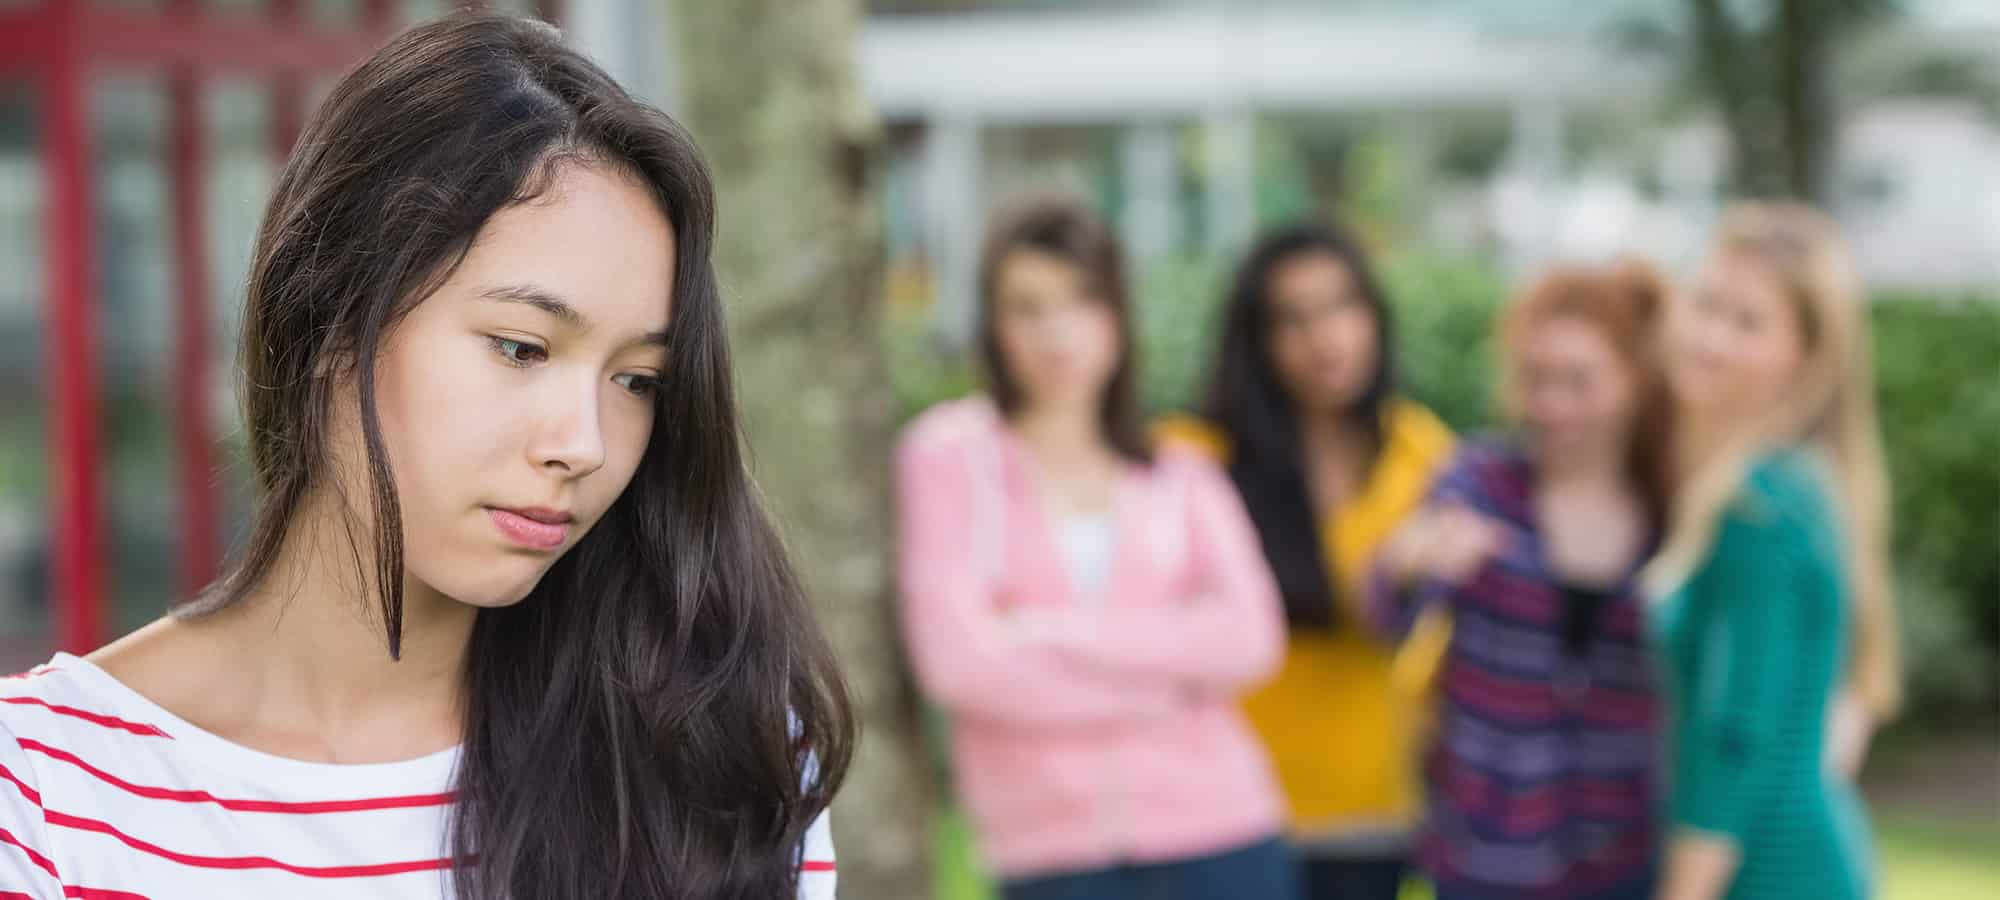 Strengthening Children and Teens Against Peer Pressure